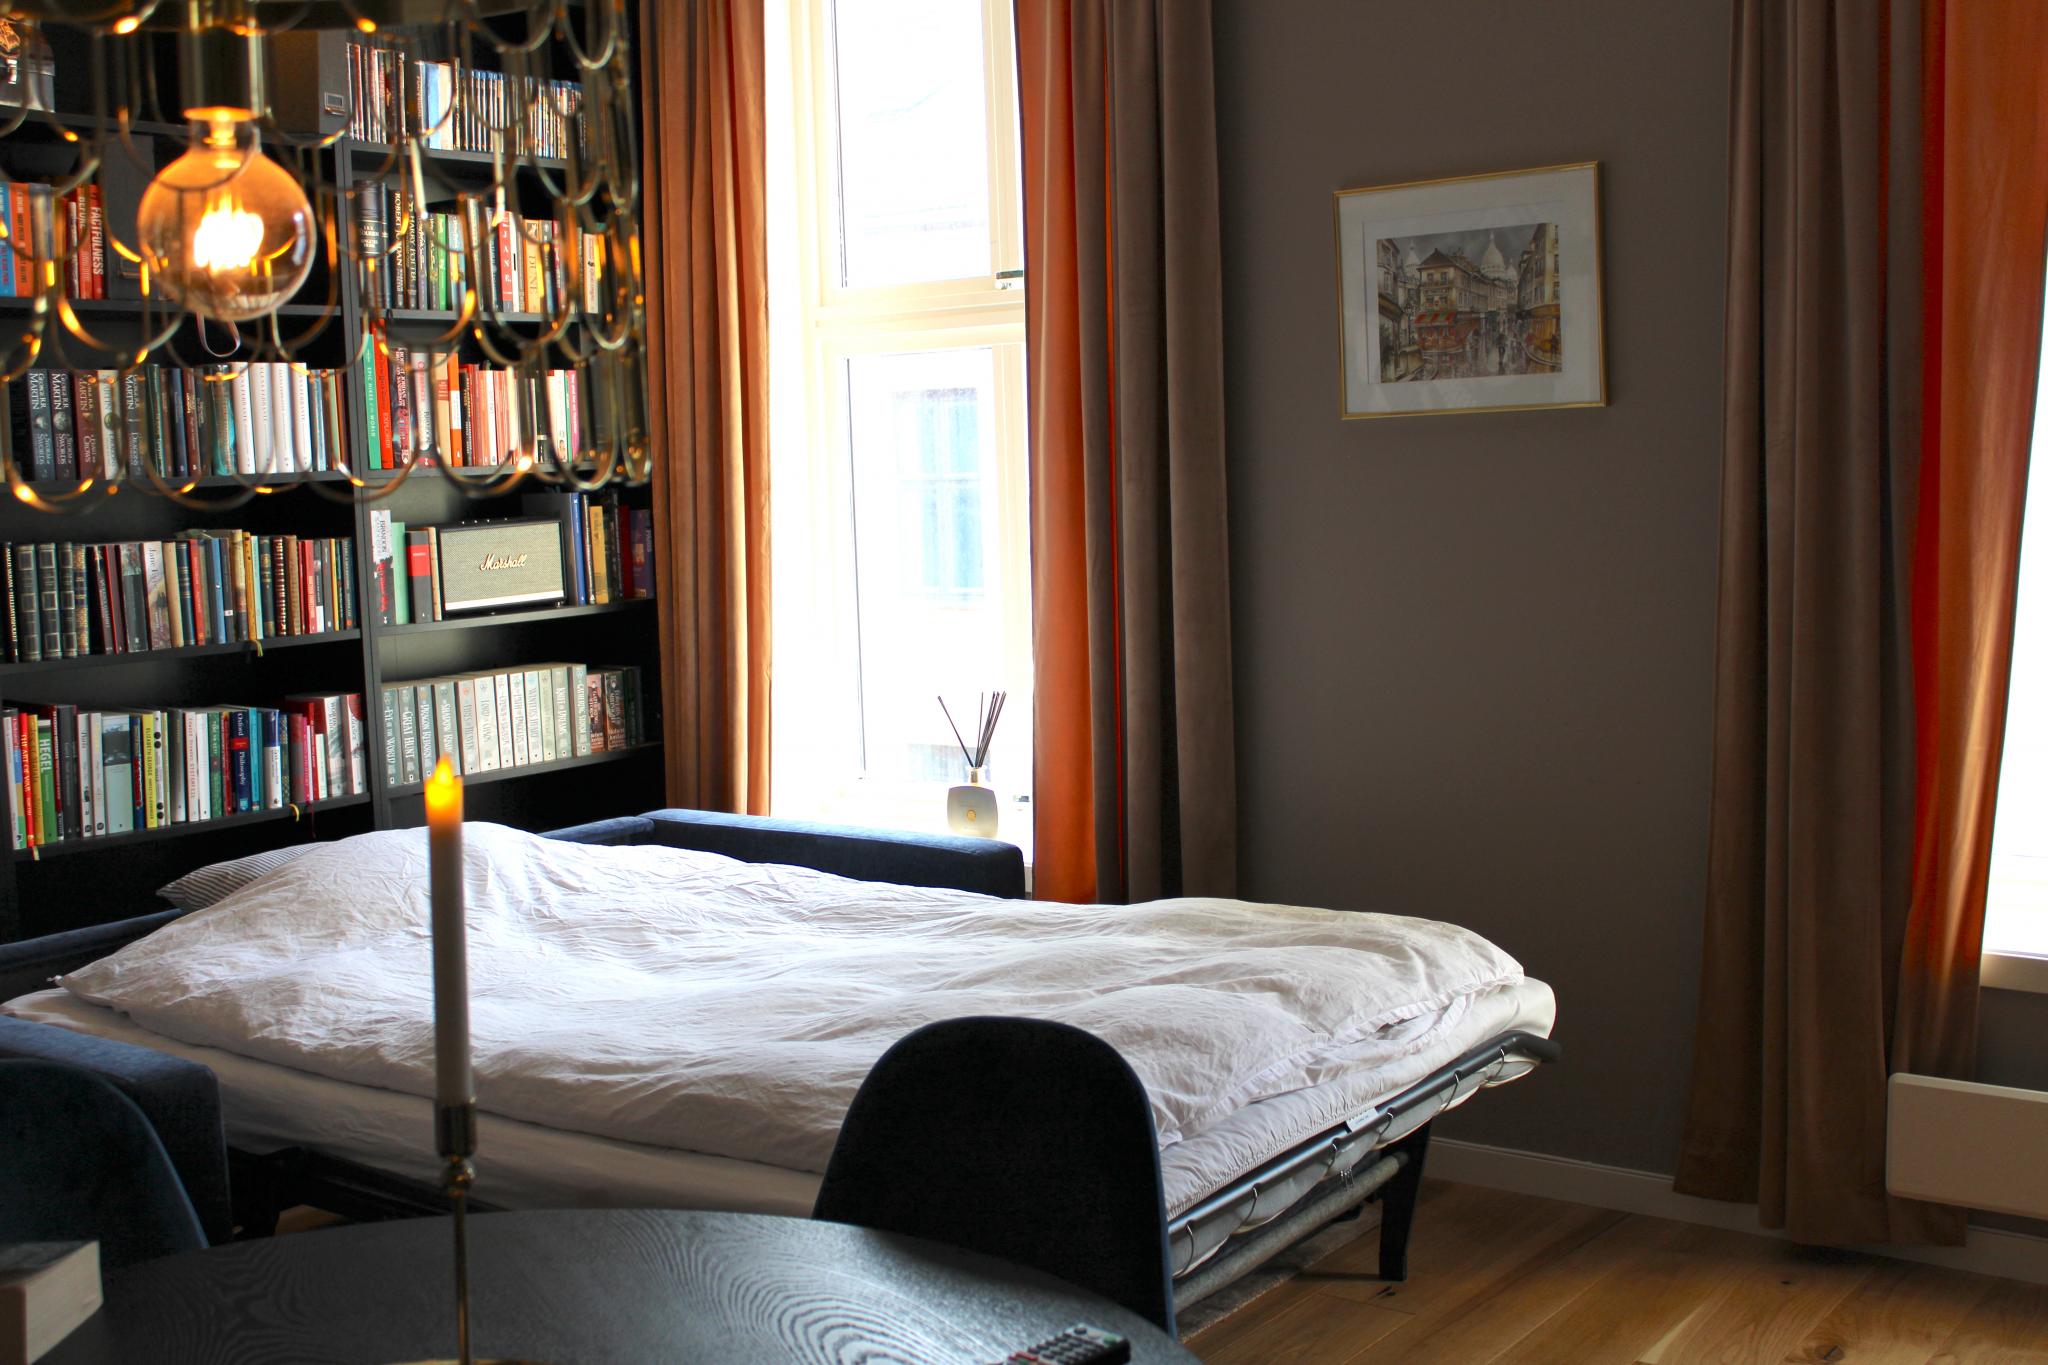 En sovesofa sparer mye plass, og stuebordet veier lite og er lett å flytte.